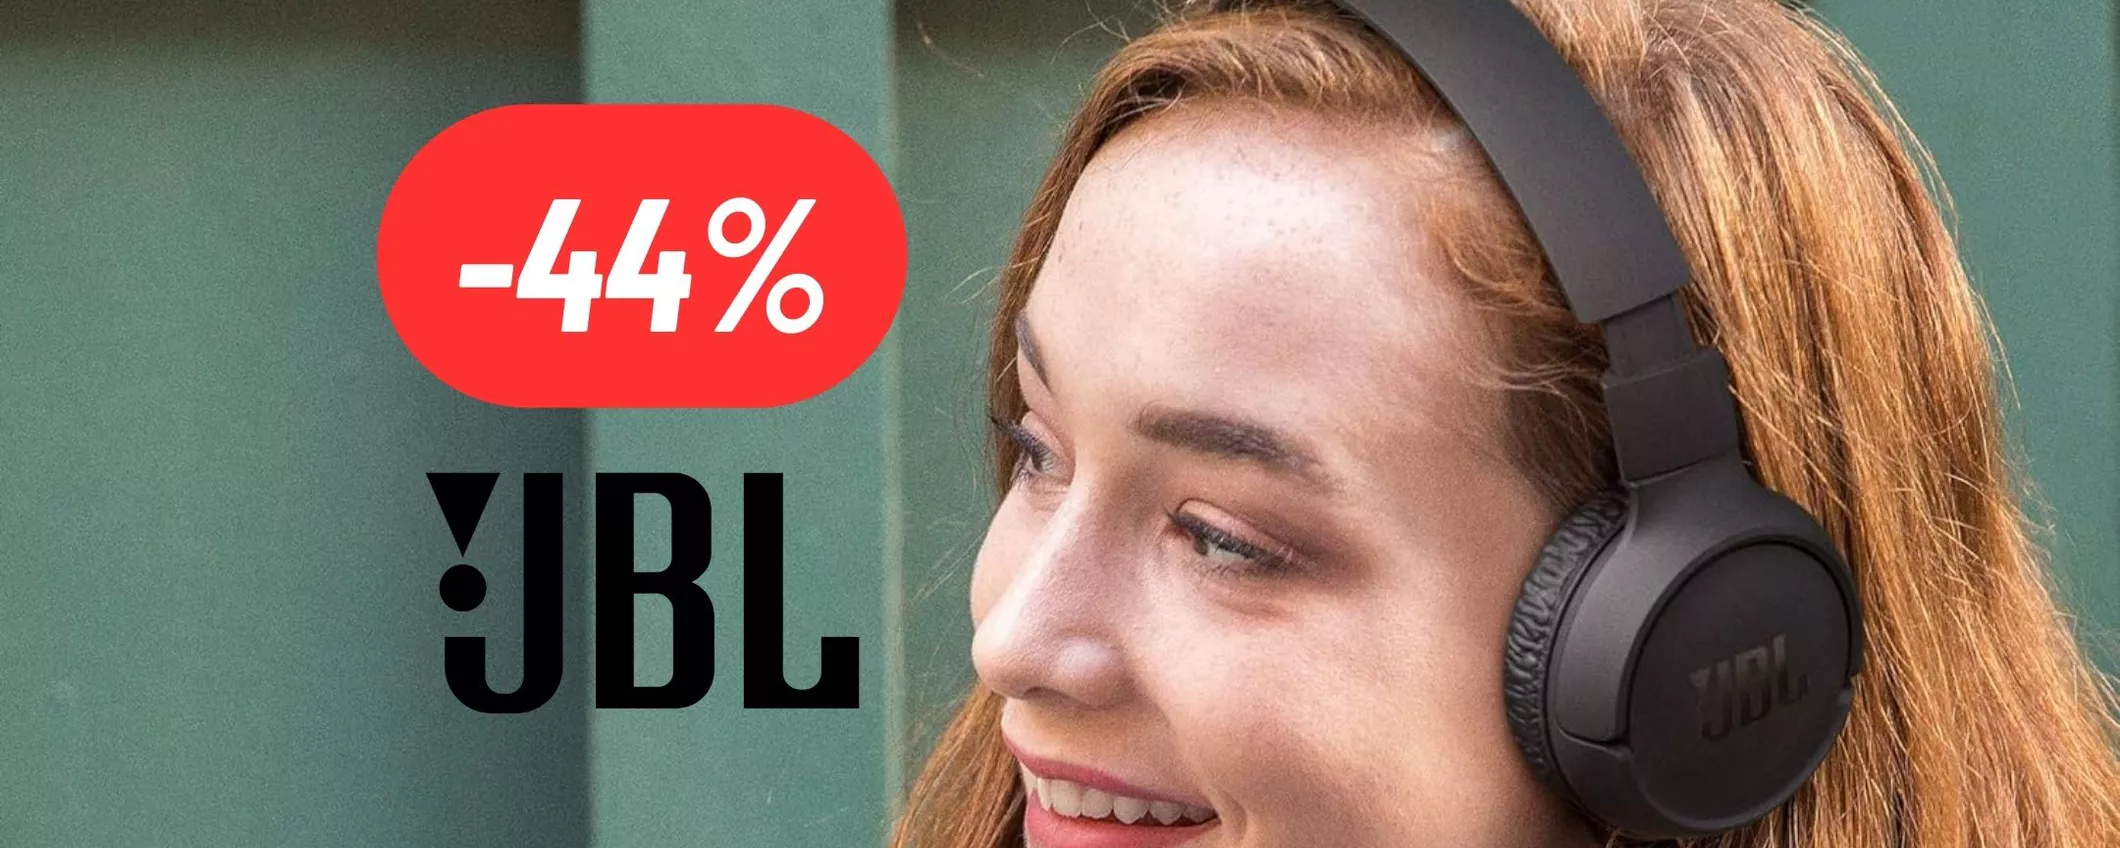 Audio al top e comodità senza pari: le cuffie bluetooth JBL sono SCONTATISSIME su Amazon (-44%!)